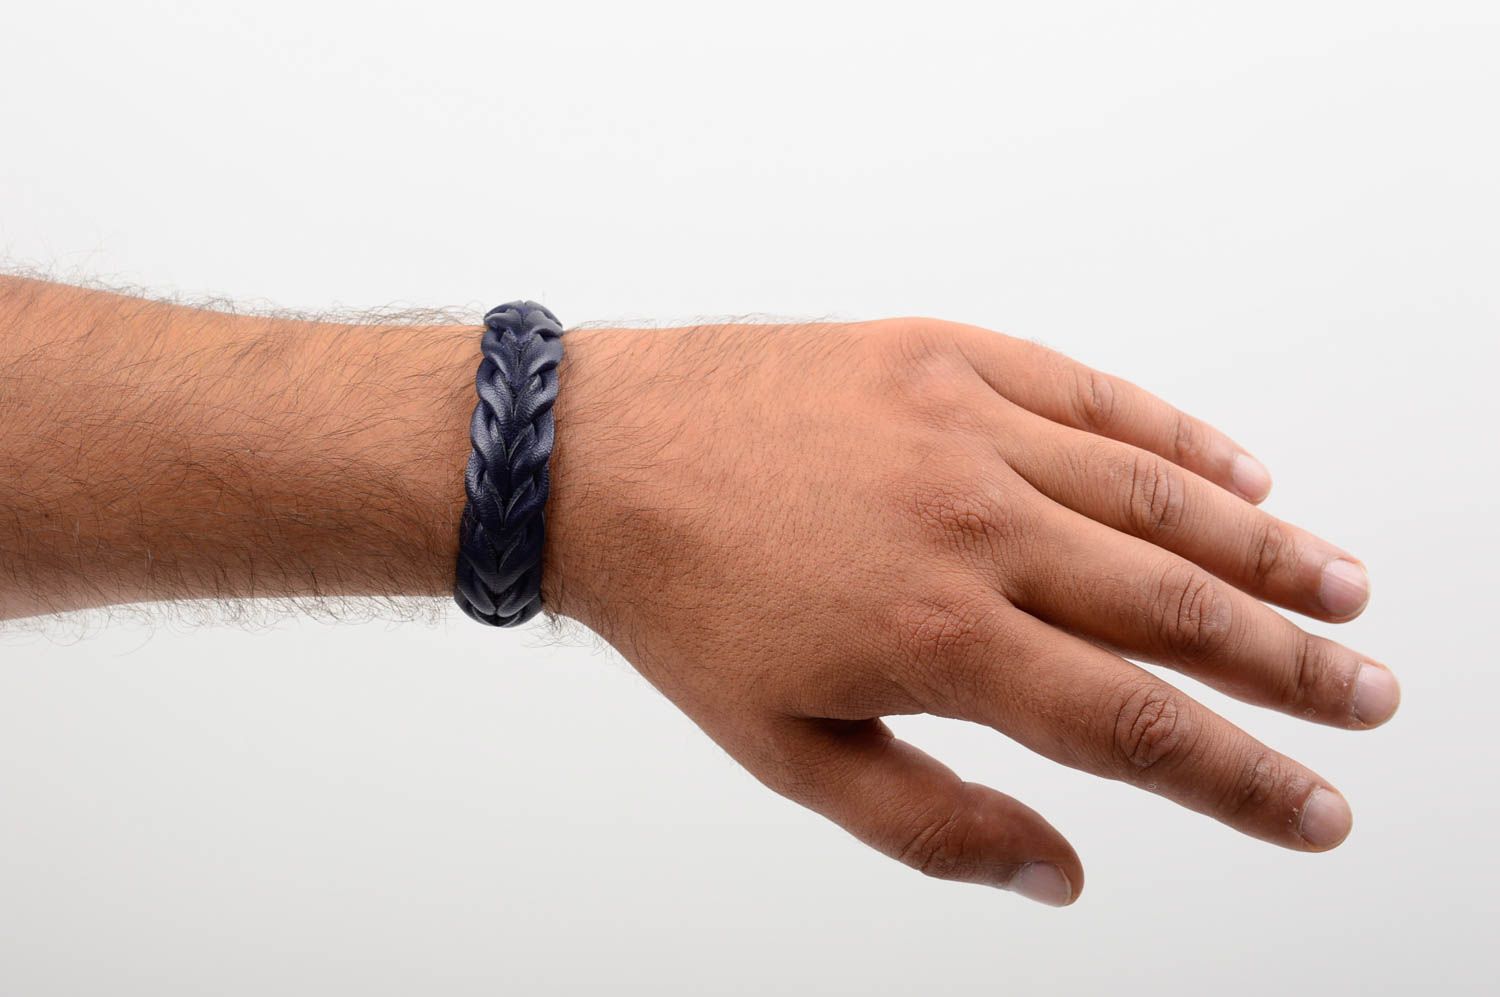 Stylish handmade leather wrist bracelet designer jewelry fashion gift ideas photo 5